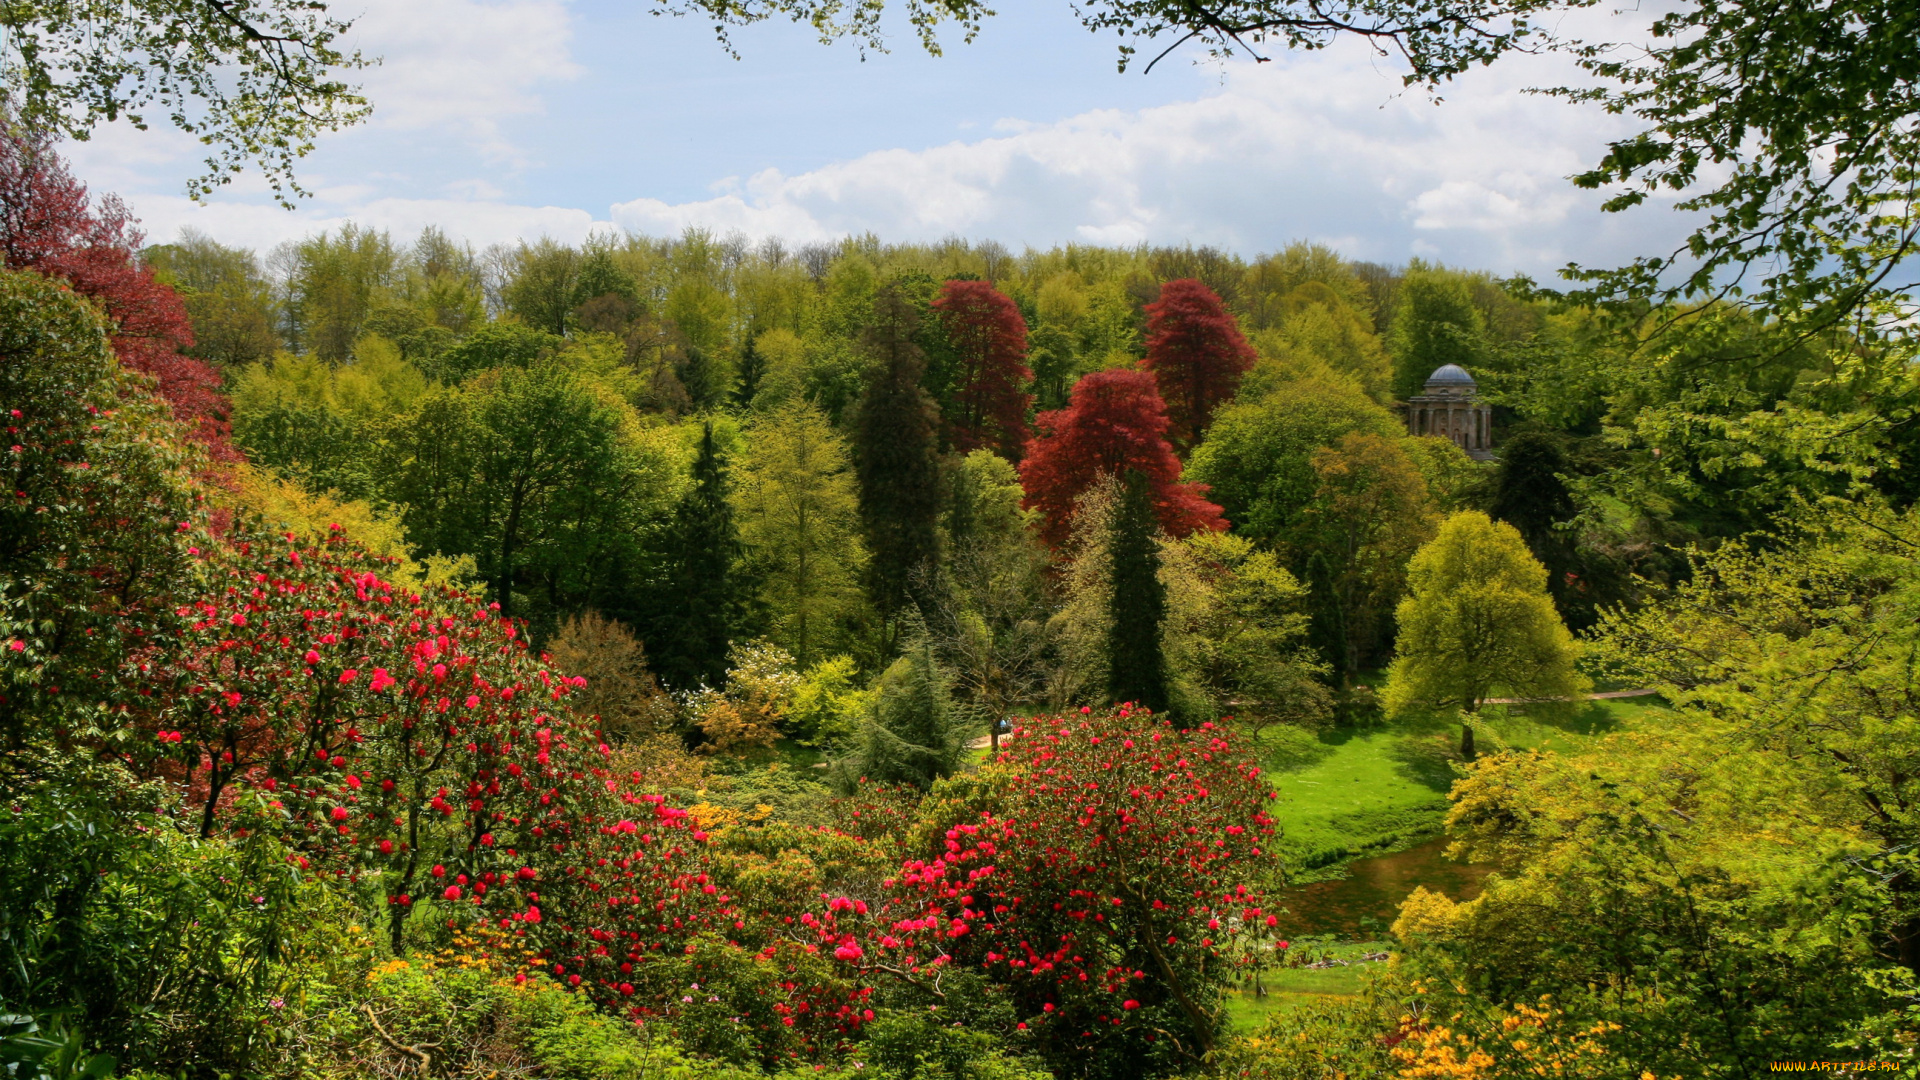 stourhead, gardens, англия, природа, парк, цветы, деревья, кусты